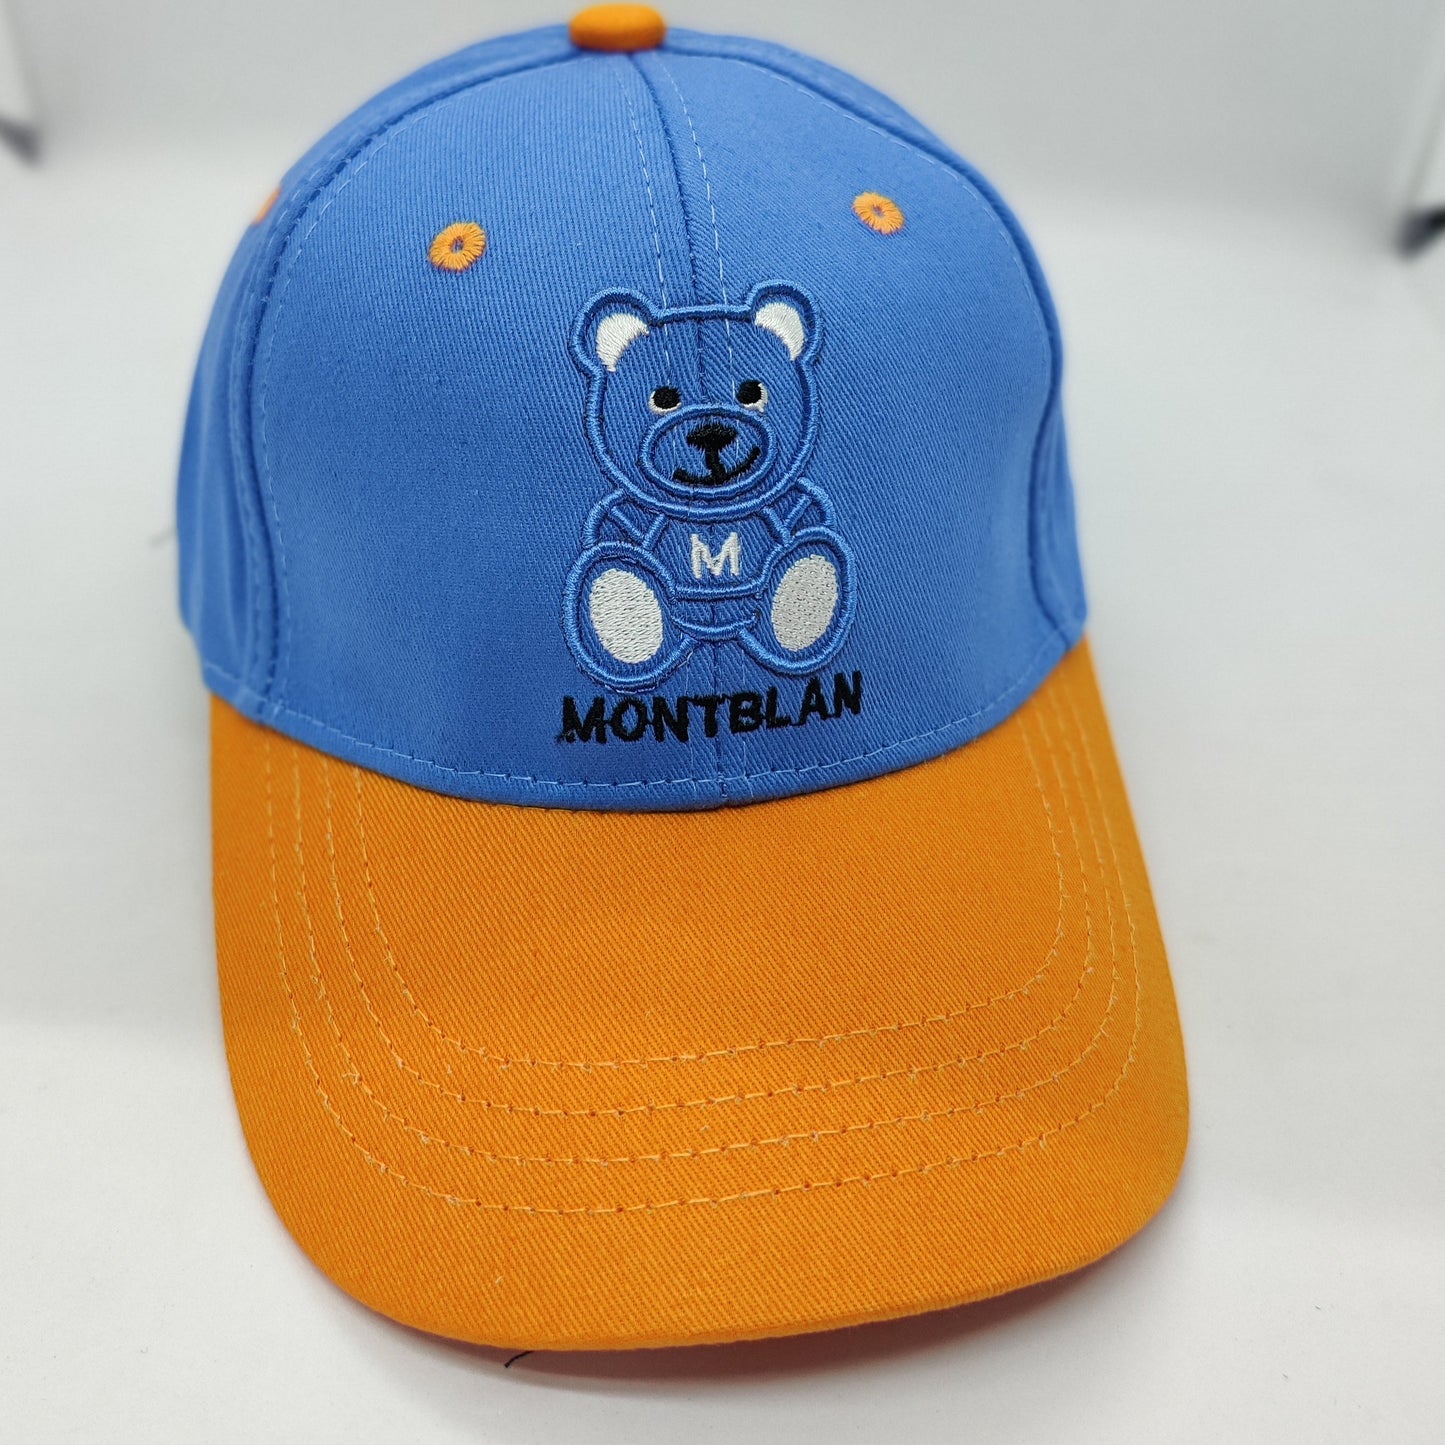 MONTBLAN CAP